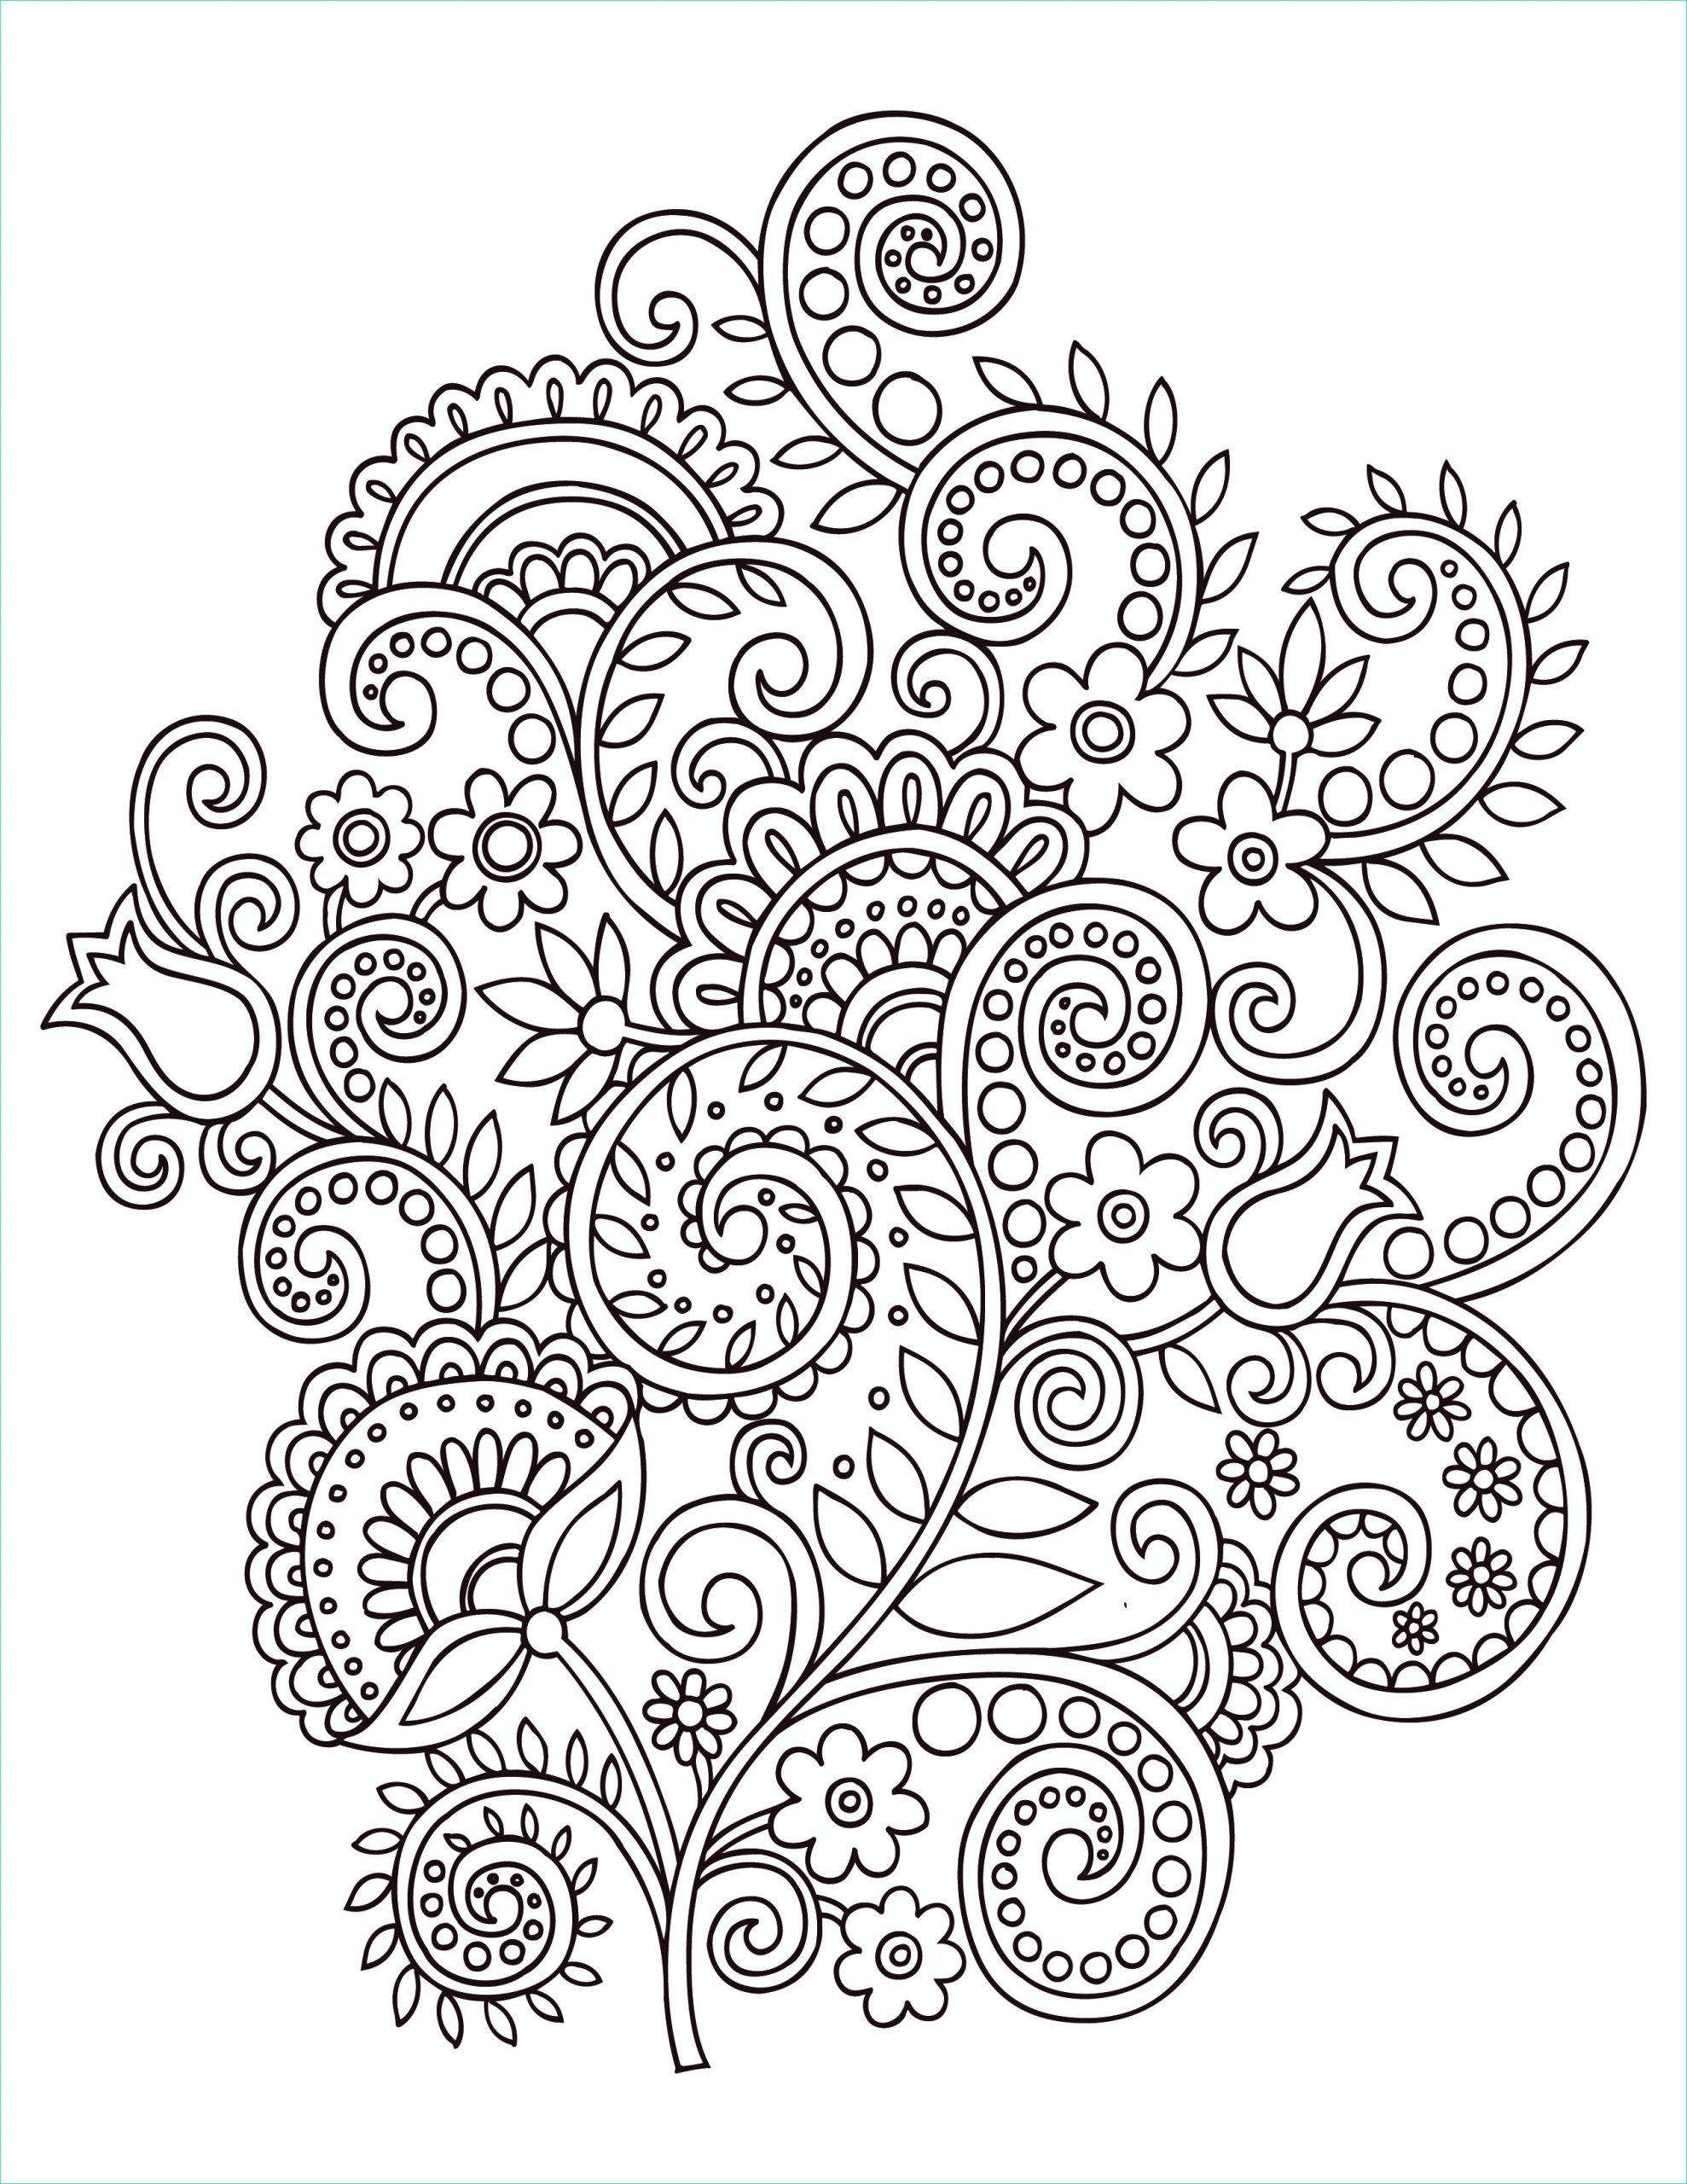 Coloriage Fleurs Adulte Luxe Stock Fleurs Doodle Coloriage Anti Stress Gratuit Artherapie